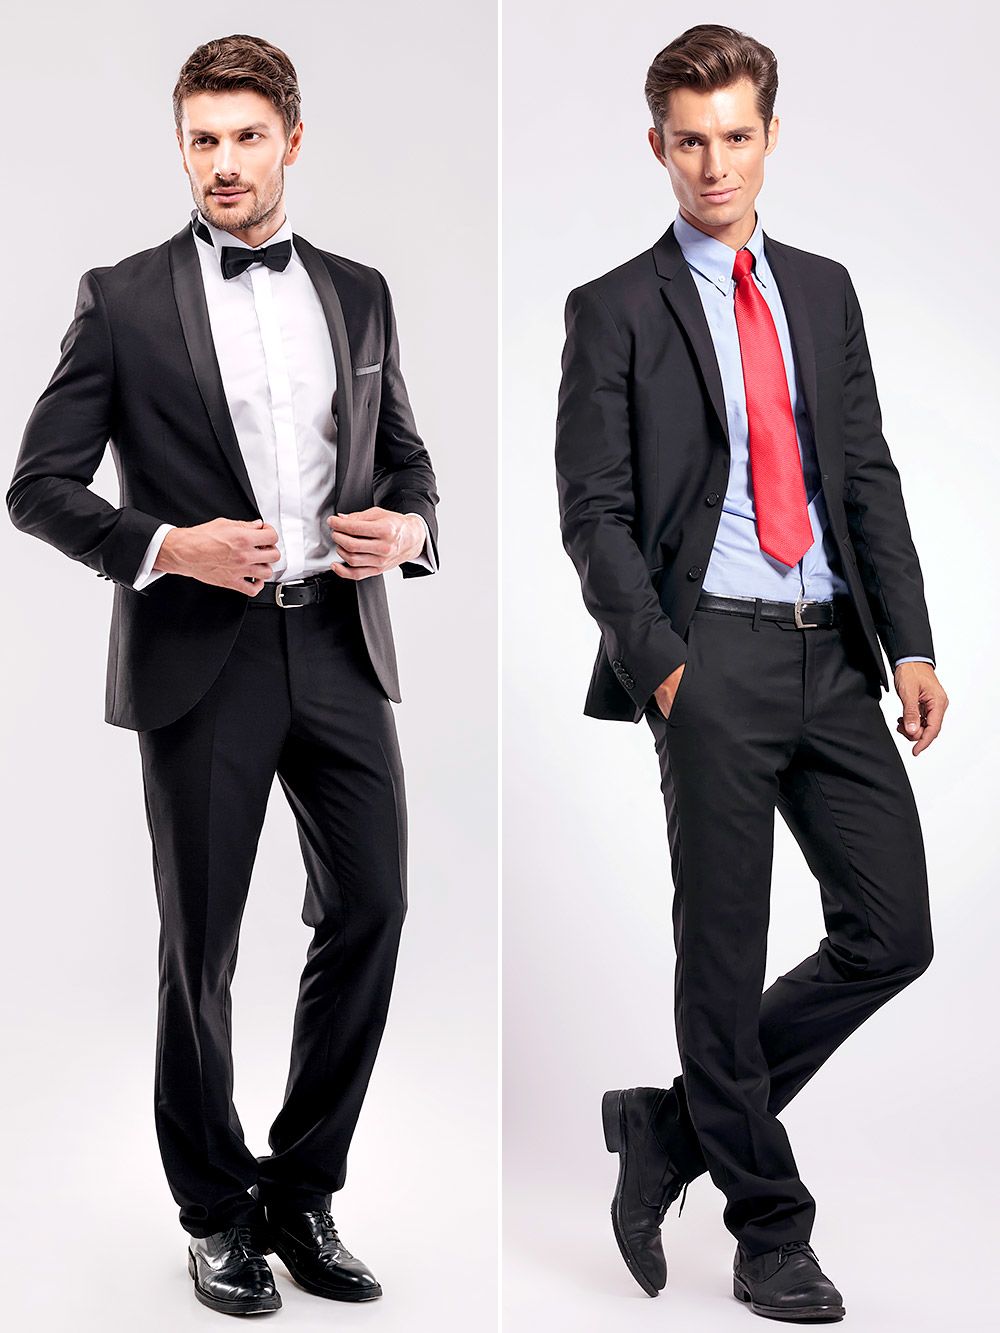 Tuxedo và suit, đâu là điểm khác biệt